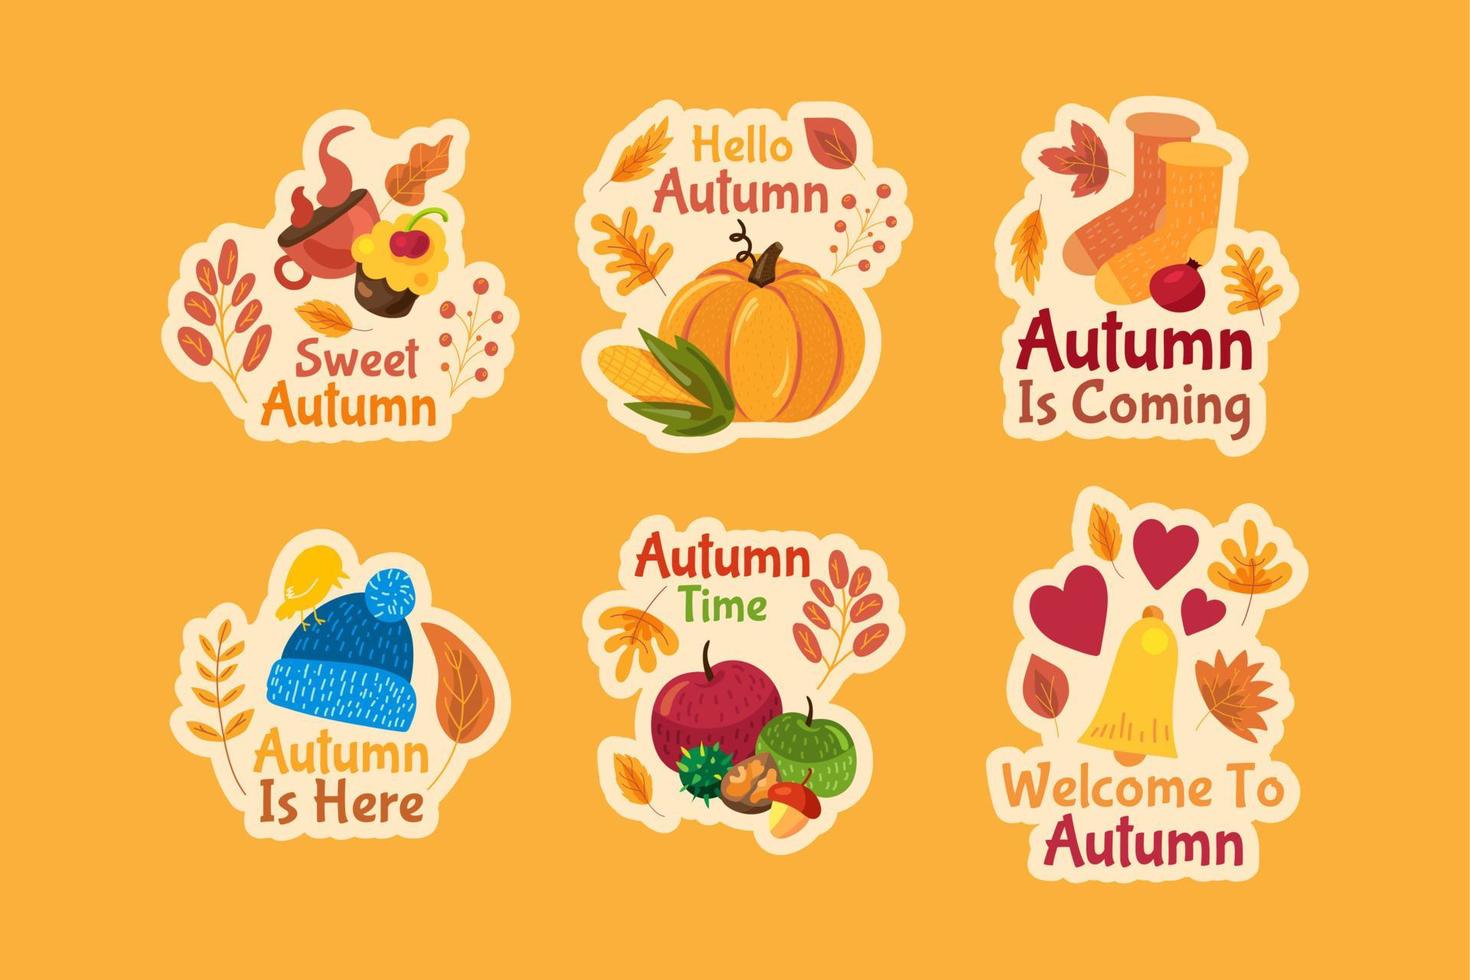 conjunto de pegatinas de otoño. lindas etiquetas de otoño vector